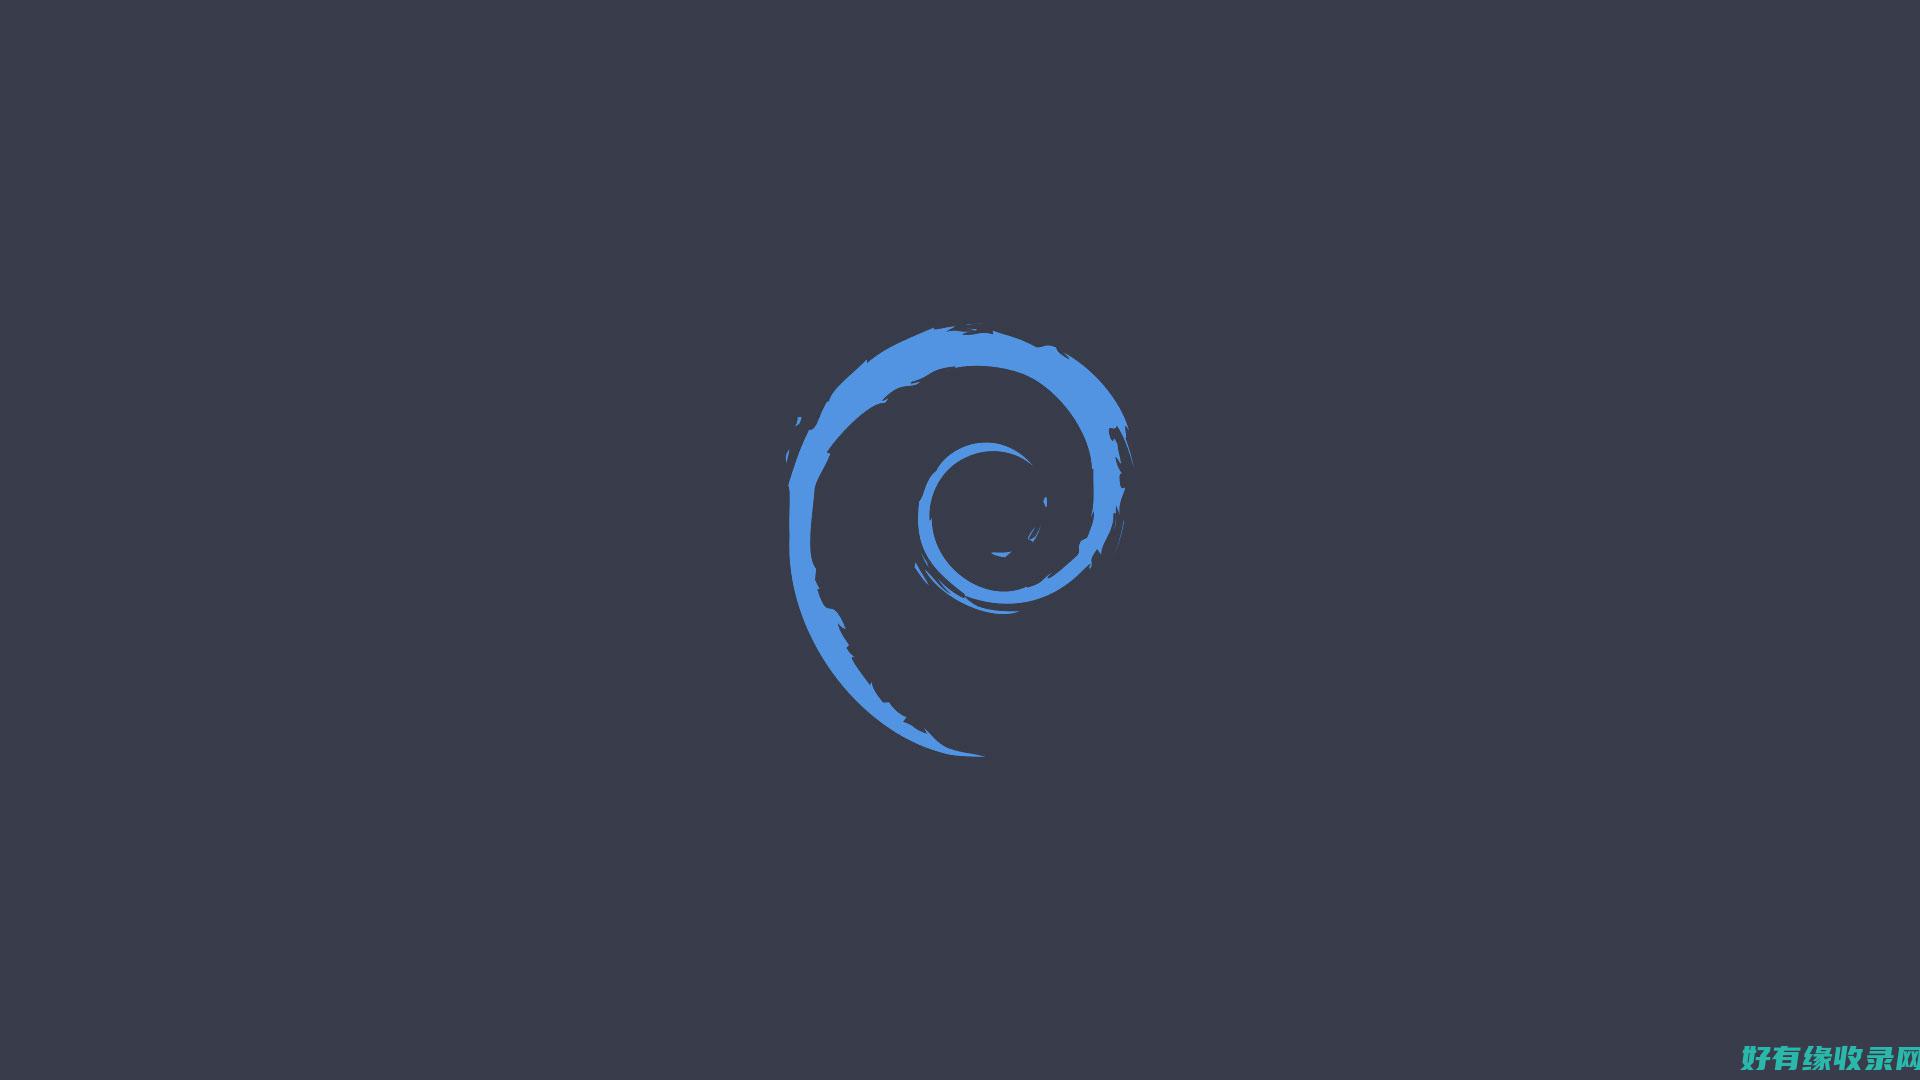 Debian源带来的便利：探索操作系统的无限可能 (debian和ubuntu的区别)